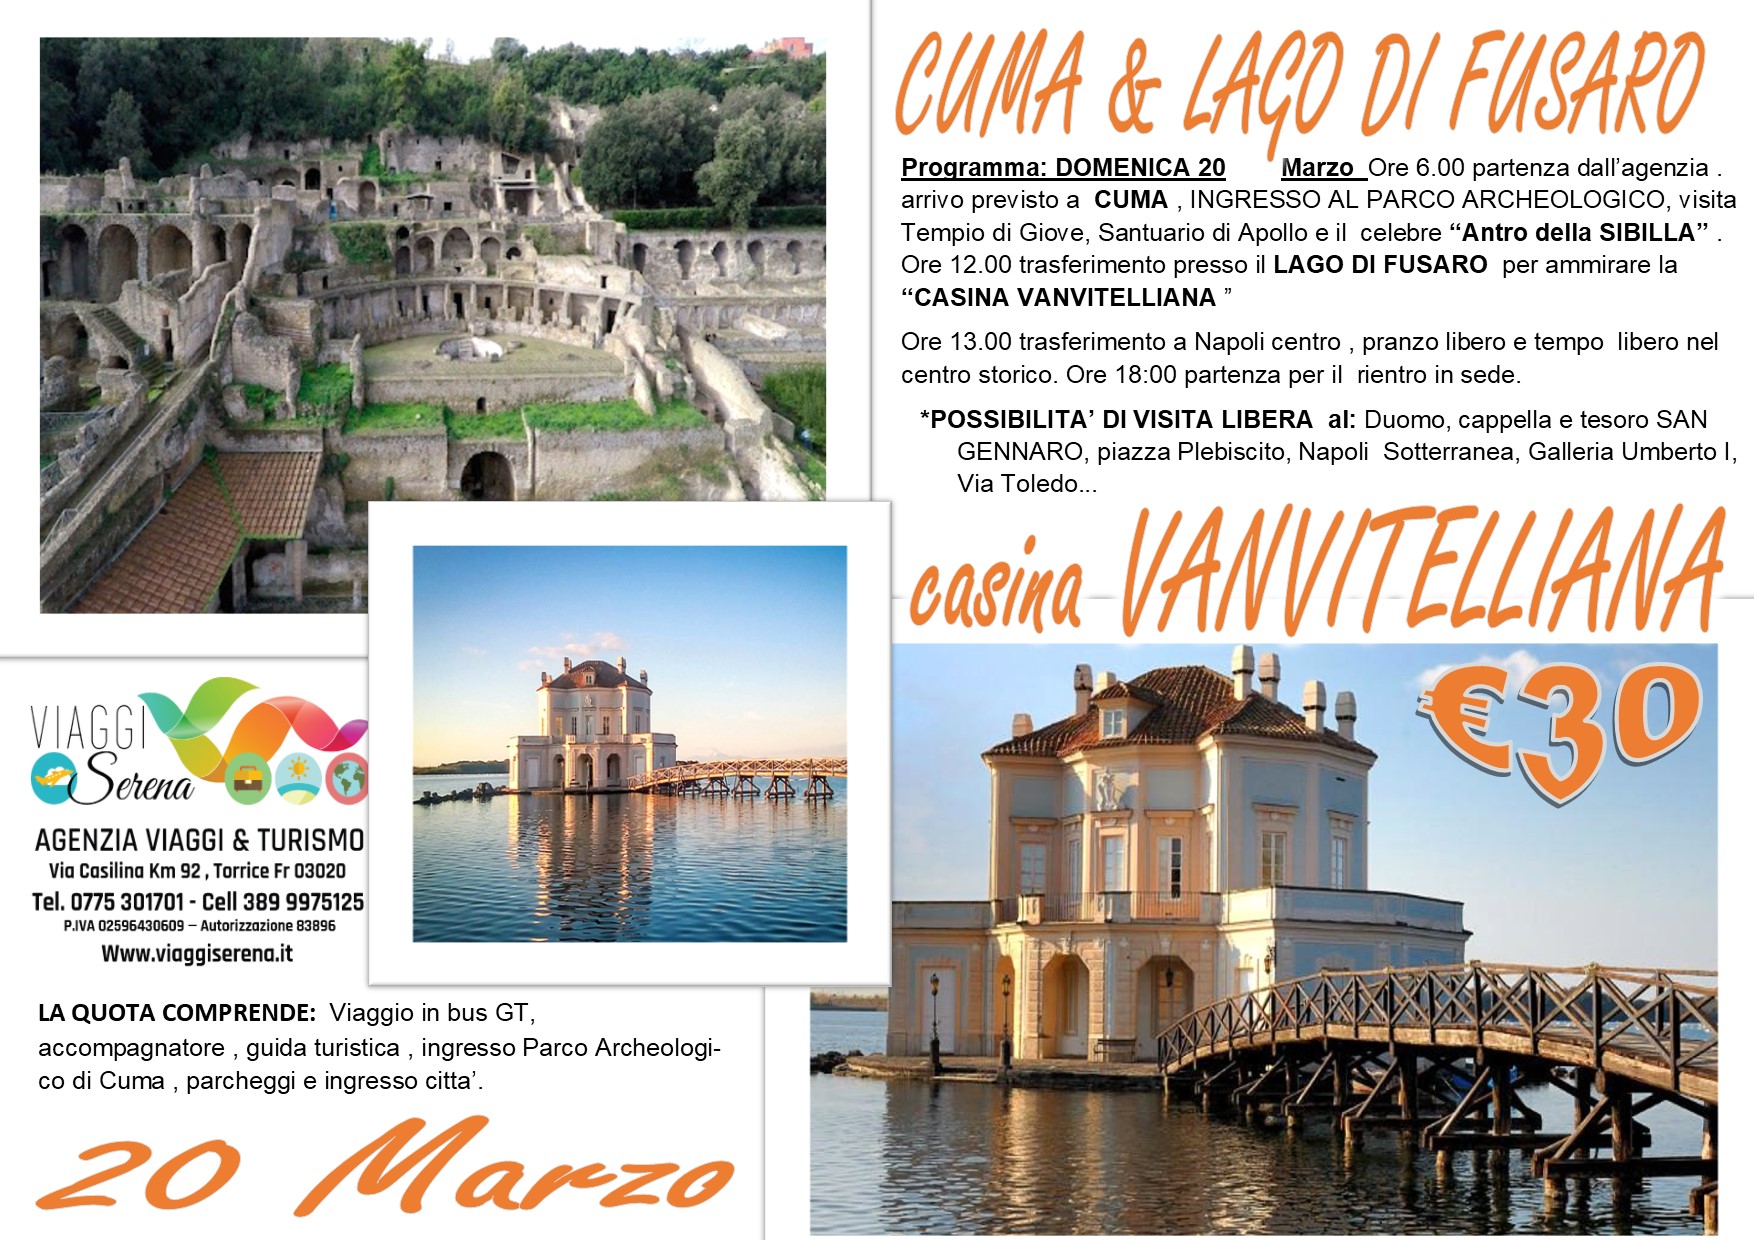 Viaggi di Gruppo: Parco Archeologico di CUMA & Casina VANVITELLIANA 20 Marzo € 30,00